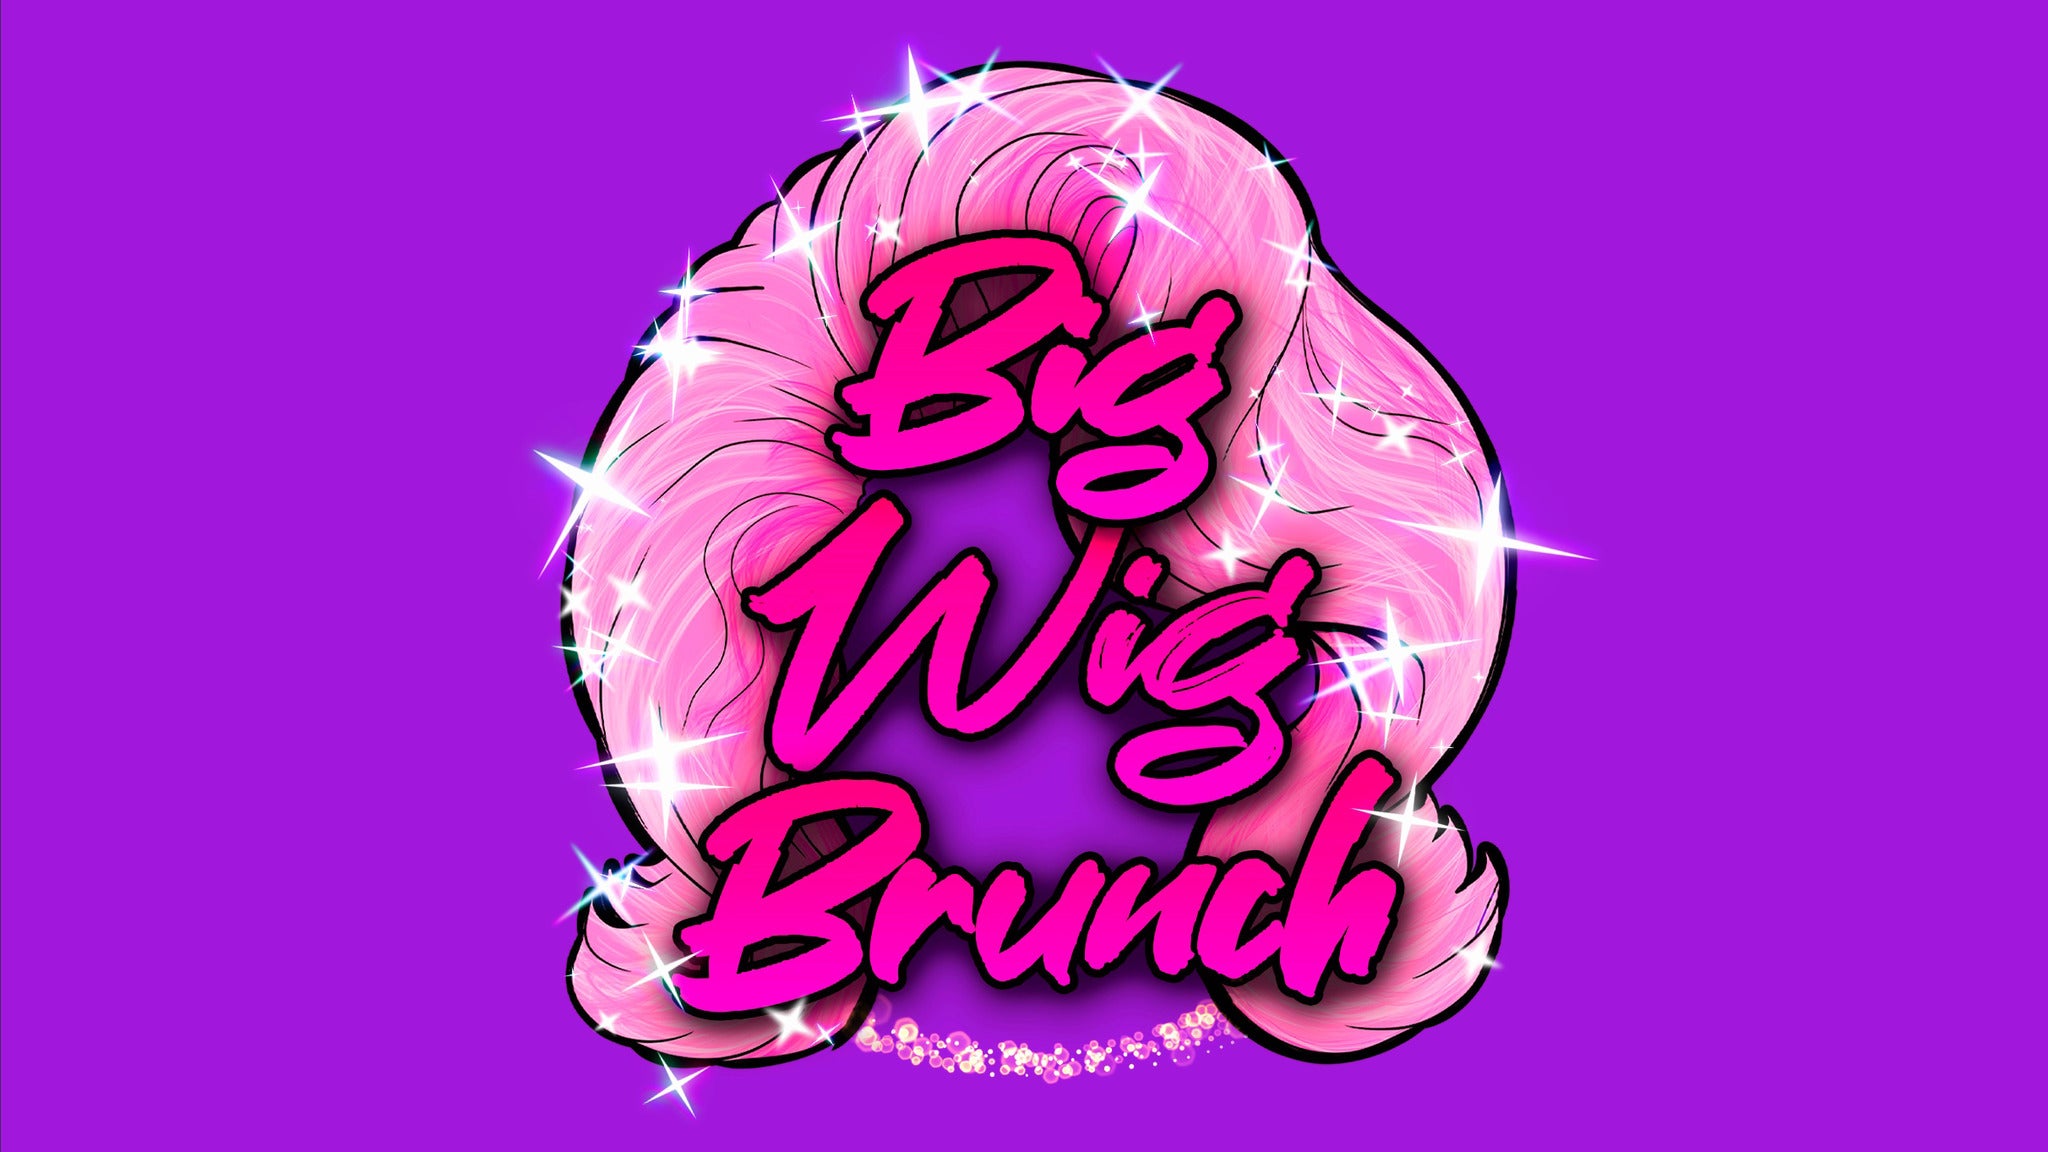 Big Wig Brunch: The Ultimate Drag Experience presale information on freepresalepasswords.com